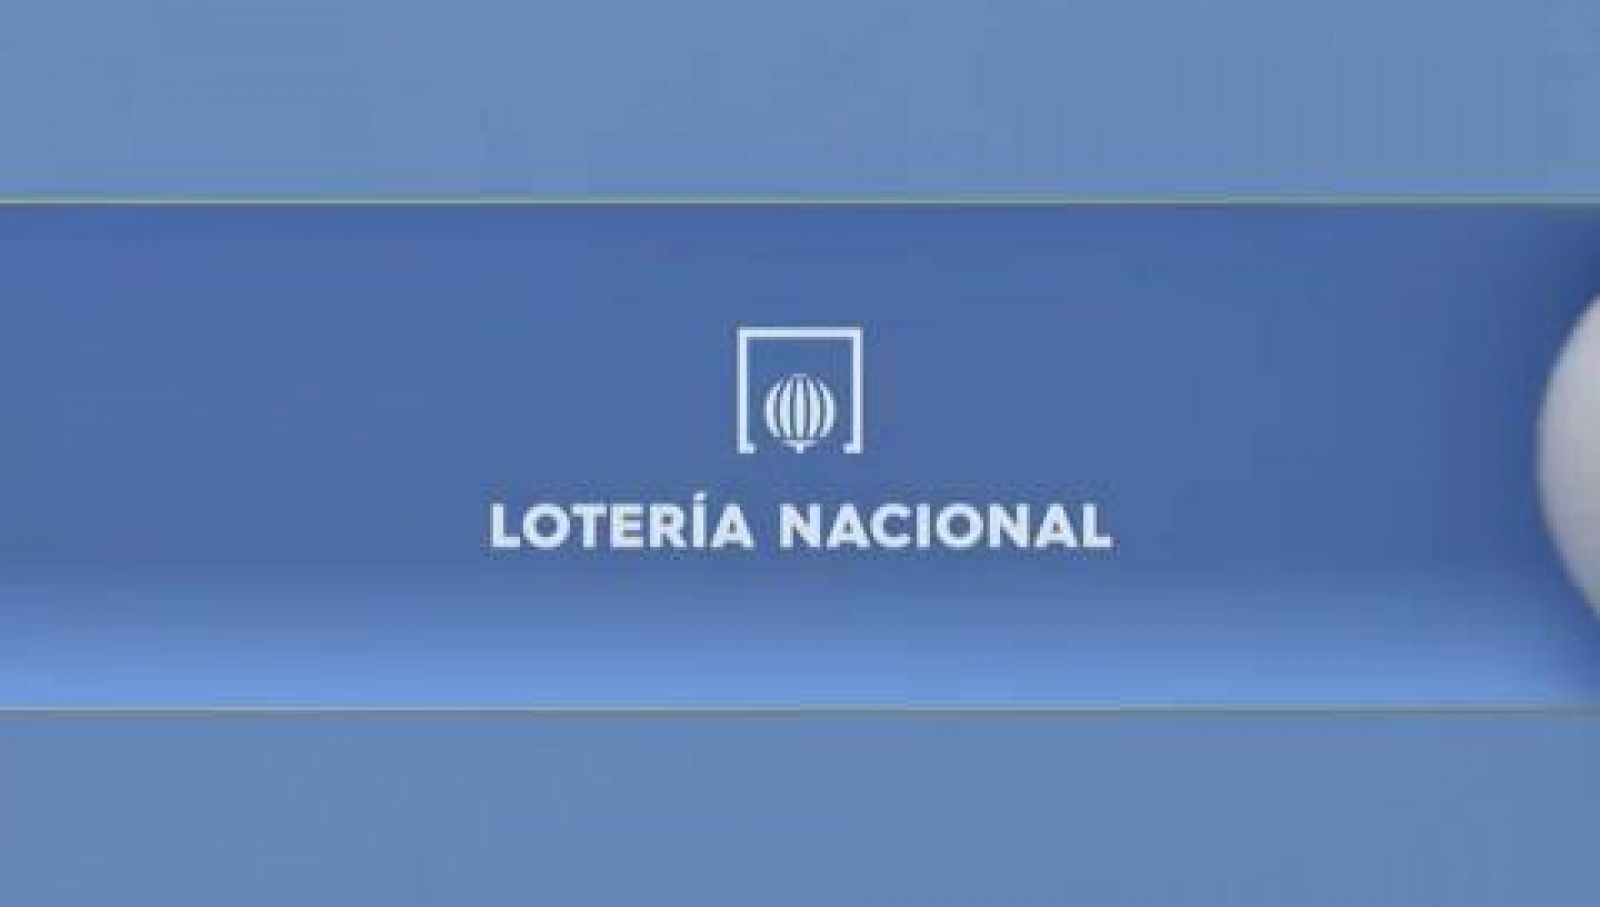 Lotería Nacional - 21/01/2021 - RTVE.es